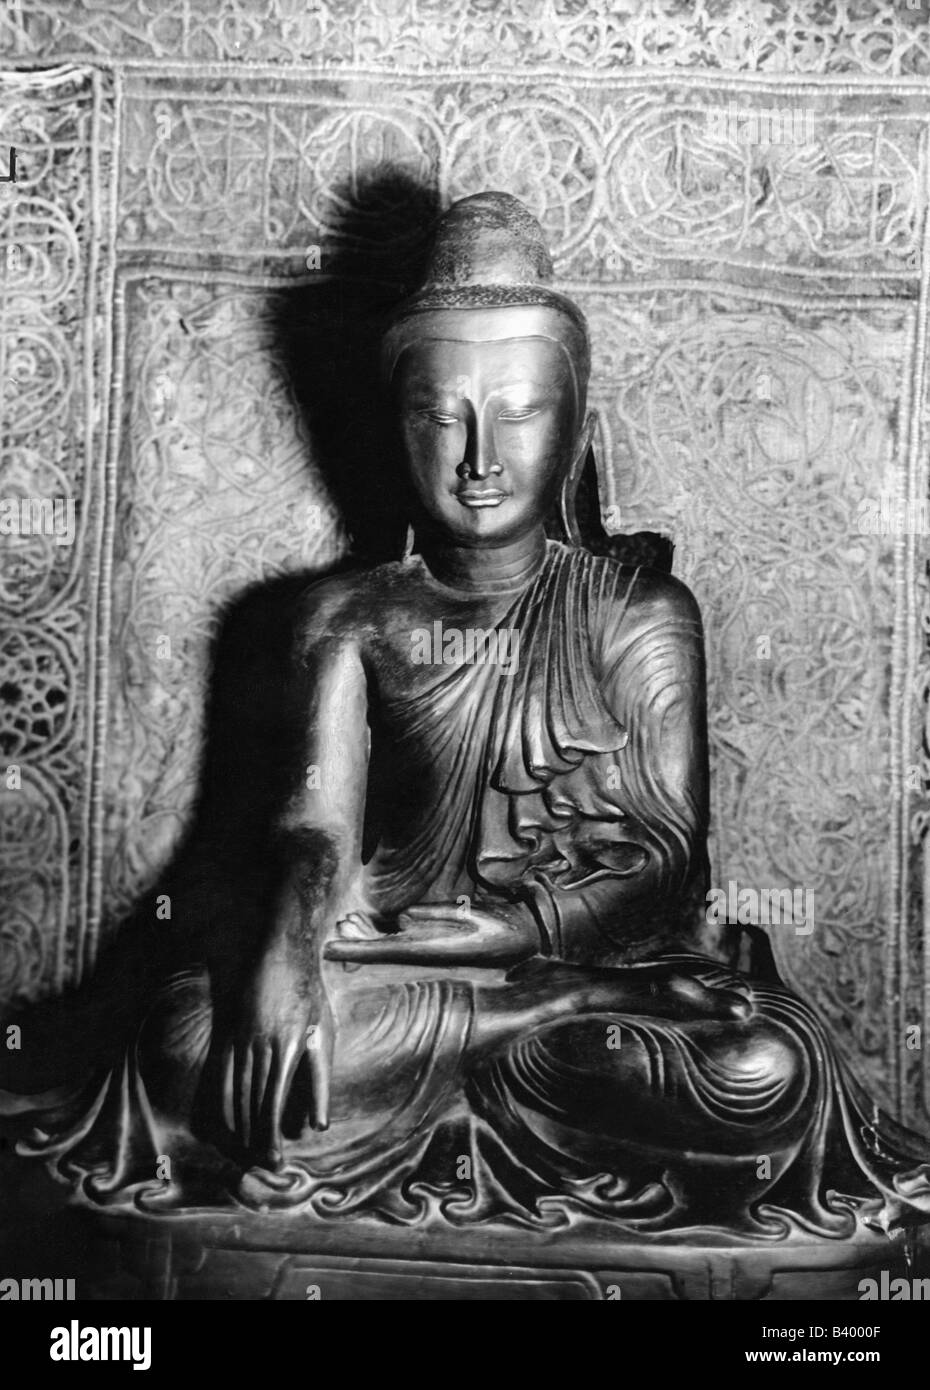 Bouddha, Prince Siddharta Gautama, 563 BC - 483 AC, fondateur indien d'une religion, bouddhisme, Banque D'Images